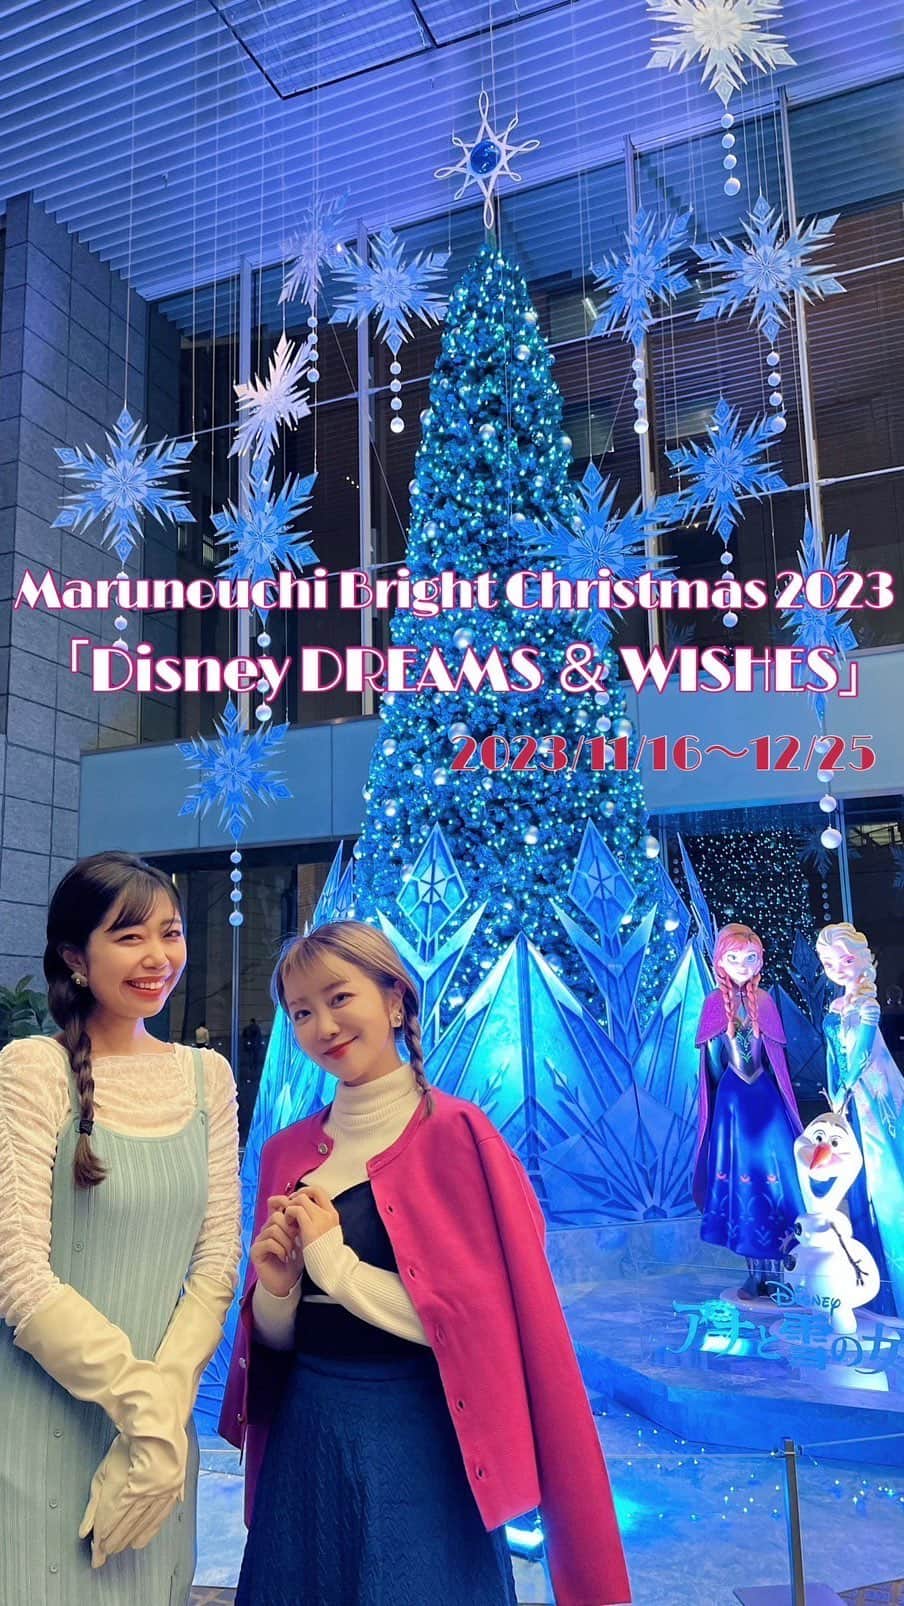 中島奈津希のインスタグラム：「🎄🌟💫🍴 ⁡ ⁡ ⁡ 今年のクリスマスはぜひ丸の内へ！ ⁡ ⁡ ⁡ 2023年11月16日(木)〜12月25日(月)の期間中、 丸の内では ディズニー・アニメーションをテーマにした Marunouchi Bright Christmas 2023 「Disney DREAMS ＆ WISHES」が開催中だよ🎄🌟 ⁡ ⁡ ⁡ ⁡ イベント期間中は ディズニー・アニメーションをテーマにした イルミネーションや魅力的なグッズやグルメも登場してるの😍😍 ⁡ ⁡ ⁡ リールで少しまとめてみたのだけど 伝わる🥺💫？ ⁡ ⁡ ⁡ ⁡ ⁡ 中でも感動したのは、 12月15日劇場公開の ディズニー100周年記念映画『ウィッシュ』に インスパイアされた、 “願いの力”を表現したモニュメントで行われているライティングショー😭🎄💫 これはぜひ見て欲しい！！ ⁡ 17時から21時の間、15分毎に上映されるのだけど、 主題曲である「ウィッシュ〜この願い〜」にあわせて動く光が本当に素敵なの！！ 映画公開後にも、もう一度観に行きたい😭🌟 ⁡ ⁡ ⁡ ⁡ ⁡ ⁡ 他のスポットもめちゃくちゃ綺麗だし、 スタンプラリーをしながらスポット回るのも楽しいからぜひ行ってみてね😍😍 ⁡ 写真も綺麗に撮ってもらったから もう一投稿しちゃう🫢🫢🎄💫笑 ☁️☁️☁️☁️☁️☁️☁️☁️☁️☁️☁️☁️☁️☁️ #ディズニー#丸の内#東京#tokyo#東京駅#marunouchi#東京観光#イベント#event#丸の内エリア#クリスマス#maruouchibrightchristmas #dreams&wishes#disney#丸の内夢と願いのクリスマスキャンペーン #PR @marunouchi_paper」